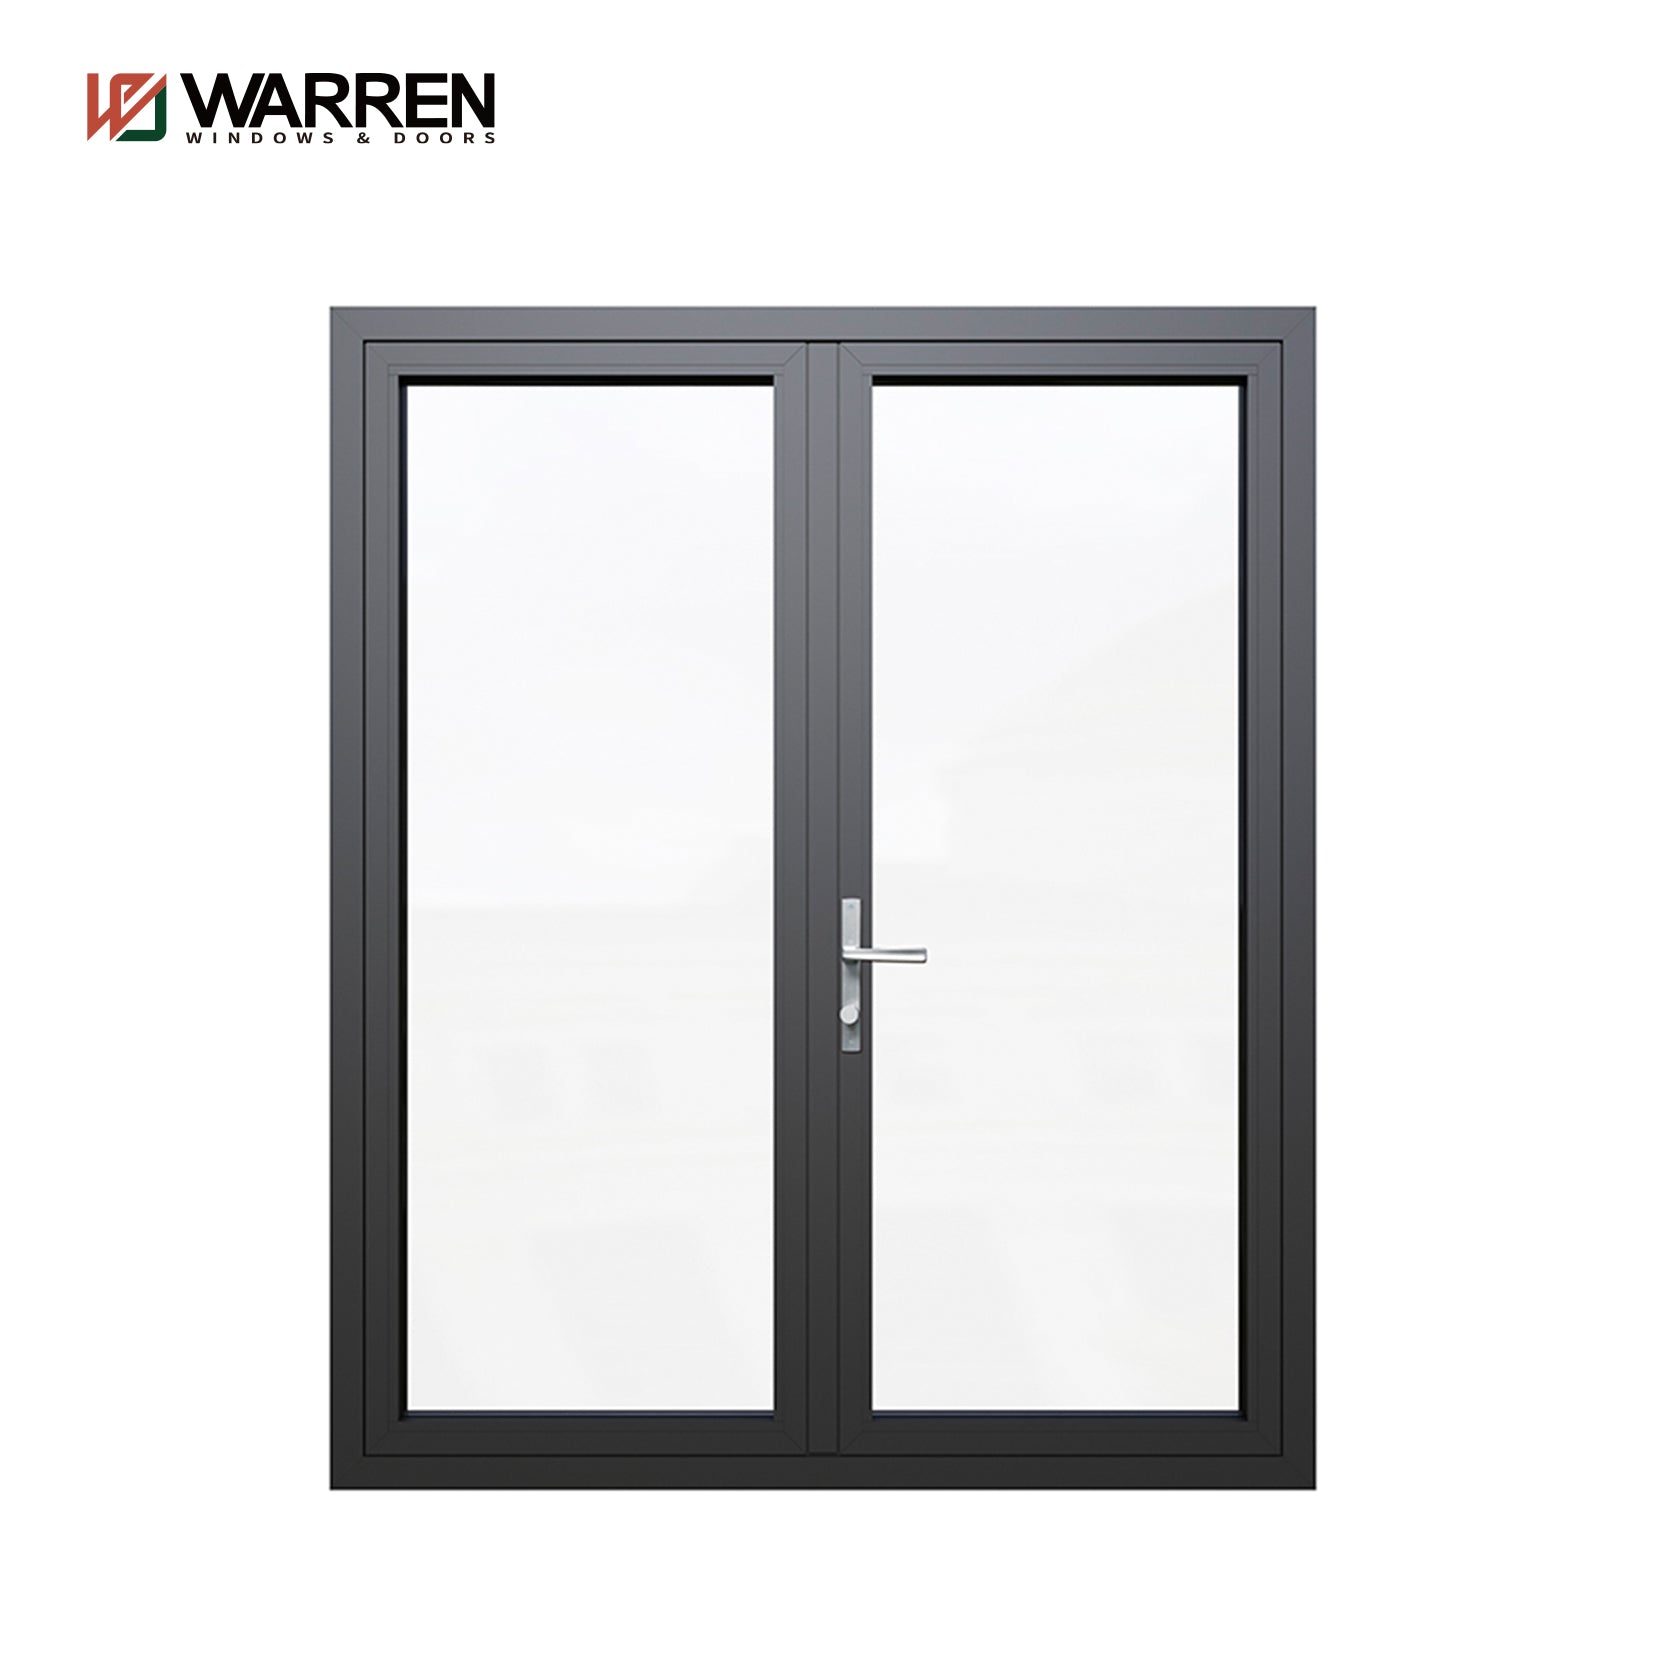 Warren 60x80 Double Entry French Doors Internal Doors Half Glazed